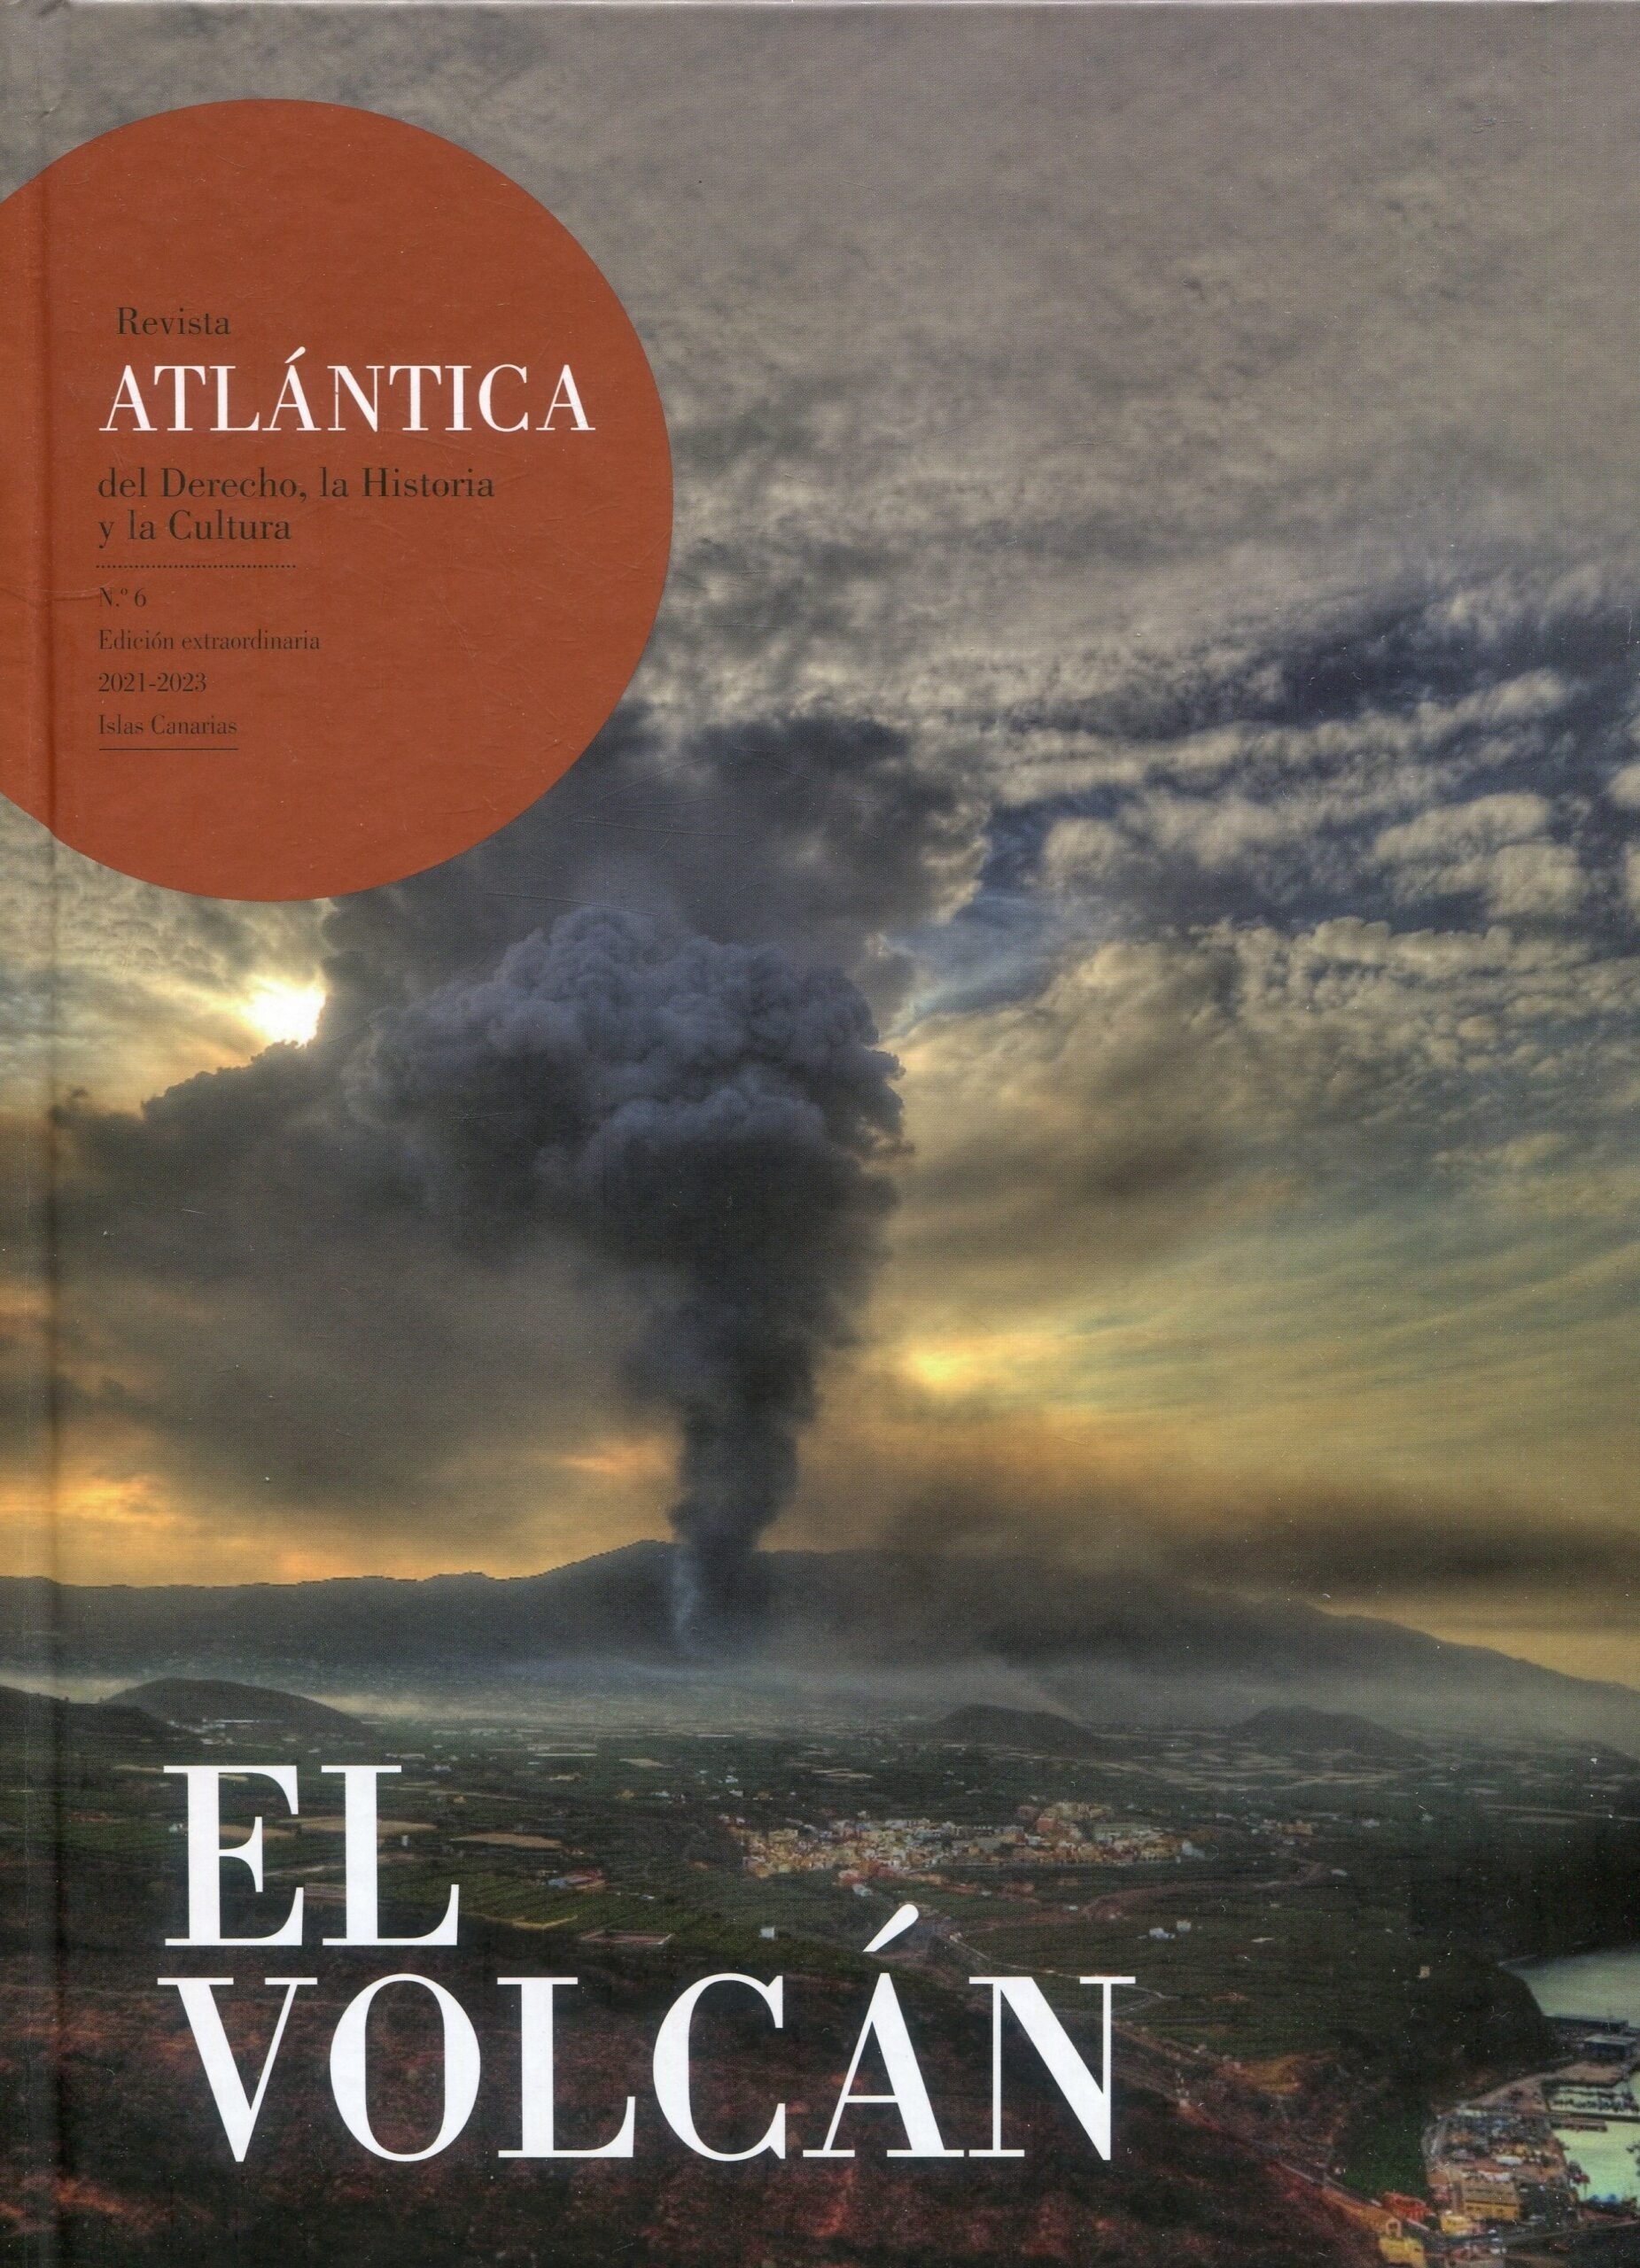 El volcán. Revista atlántica del derecho, la historia y la cultura Nº 6. Edición extraordinaria 2021-2023. "Islas Canarias"